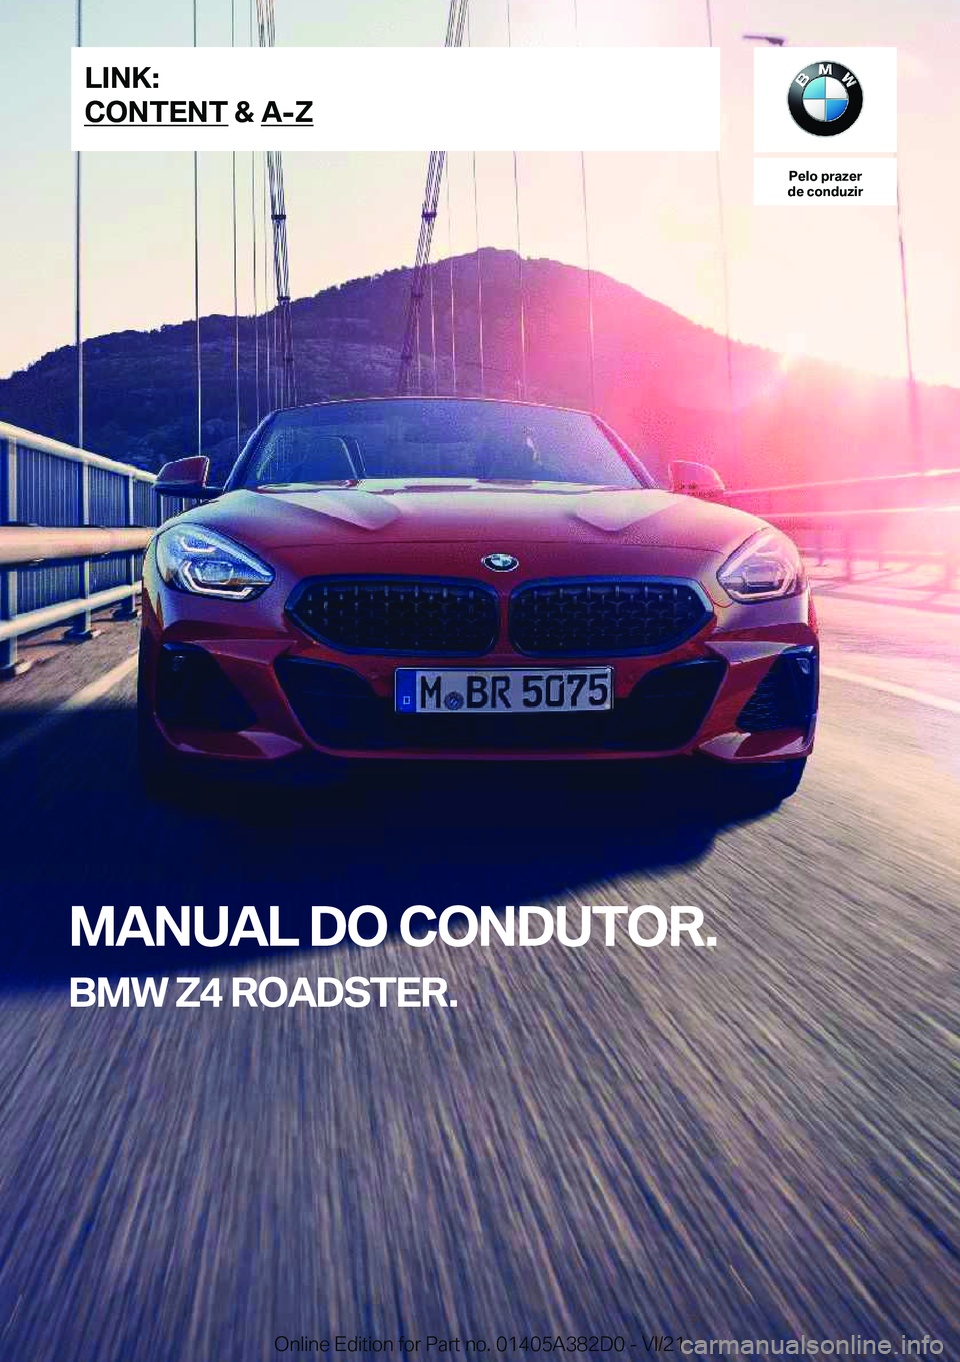 BMW Z4 2022  Manual do condutor (in Portuguese) �P�e�l�o��p�r�a�z�e�r
�d�e��c�o�n�d�u�z�i�r
�M�A�N�U�A�L��D�O��C�O�N�D�U�T�O�R�.
�B�M�W��Z�4��R�O�A�D�S�T�E�R�.�L�I�N�K�:
�C�O�N�T�E�N�T��&��A�-�Z�O�n�l�i�n�e��E�d�i�t�i�o�n��f�o�r��P�a�r�t